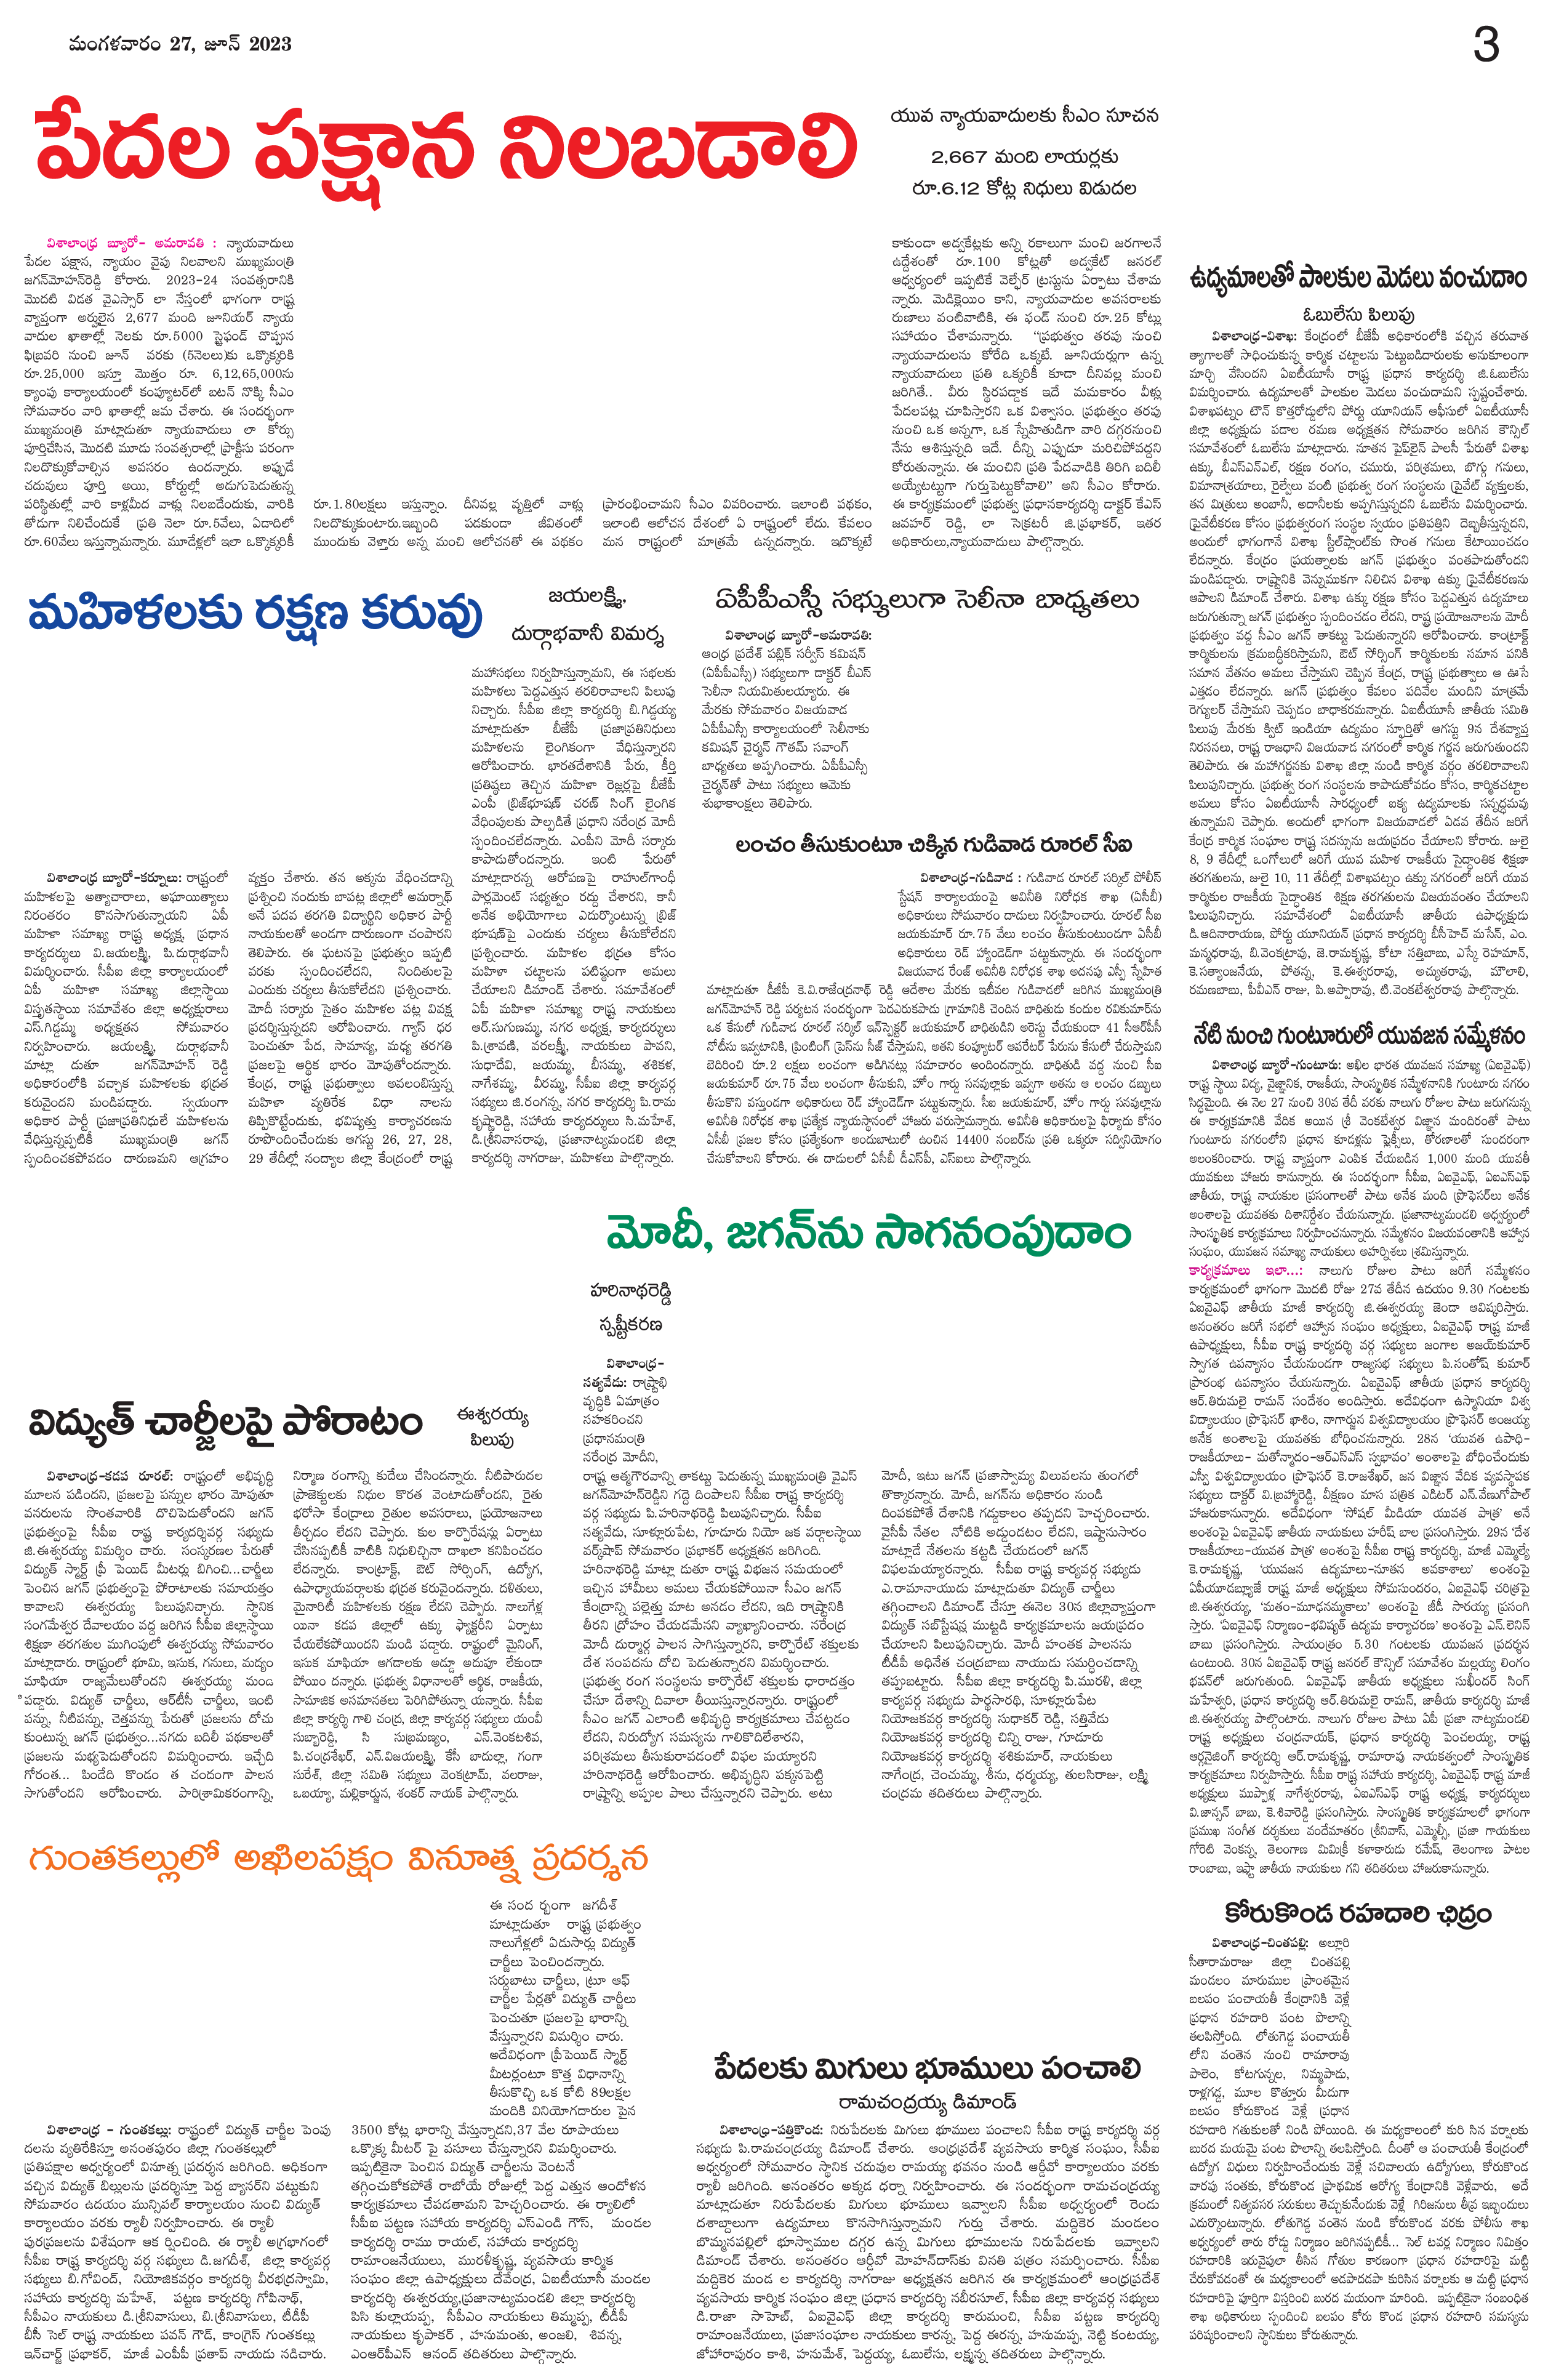 తెలుగు నిఘంటువు / తెలుగు పదబంధం - తెలుగు పదాలకు అర్థాలు /Telugu Dictionary  - Telugu Meanings